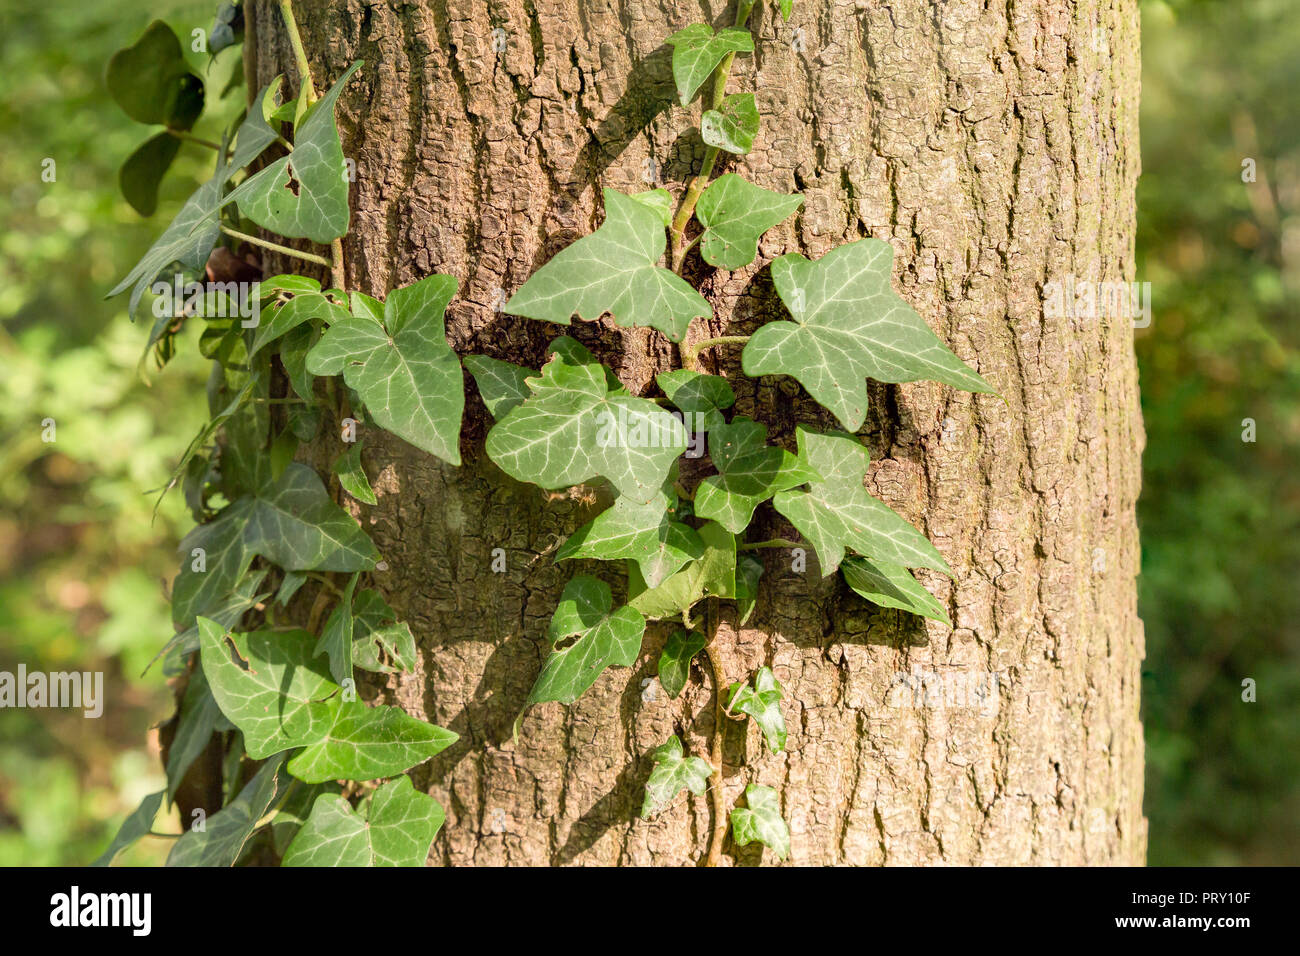 Efeu und Ranken am Baum, Laxenburg, Austria Stock Photo